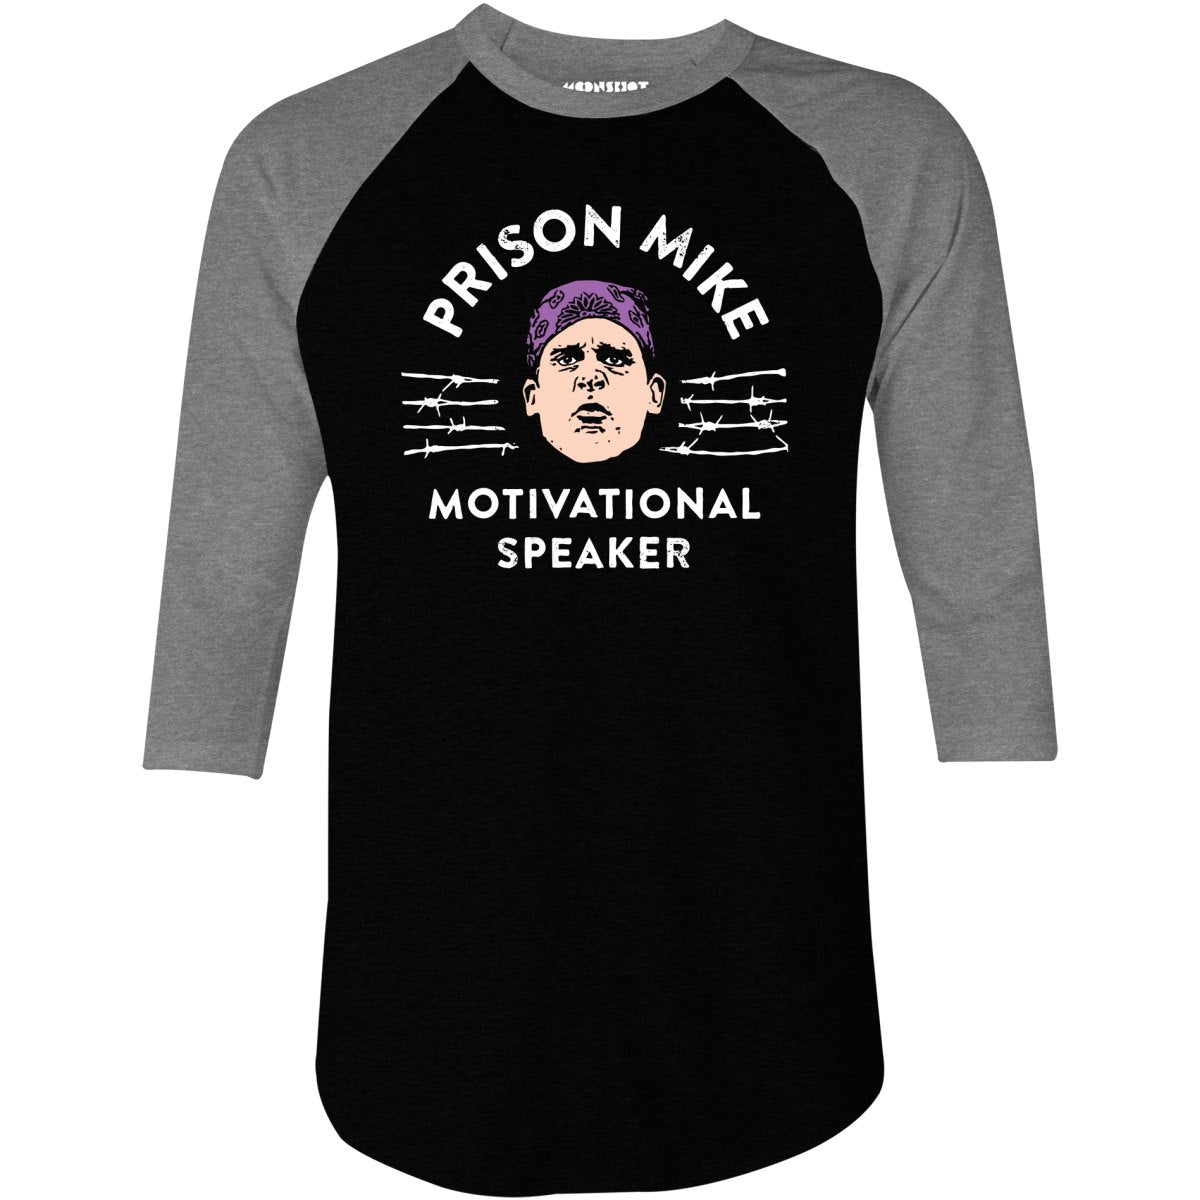 Prison Mike - Motivational Speaker - 3/4 Sleeve Raglan T-Shirt